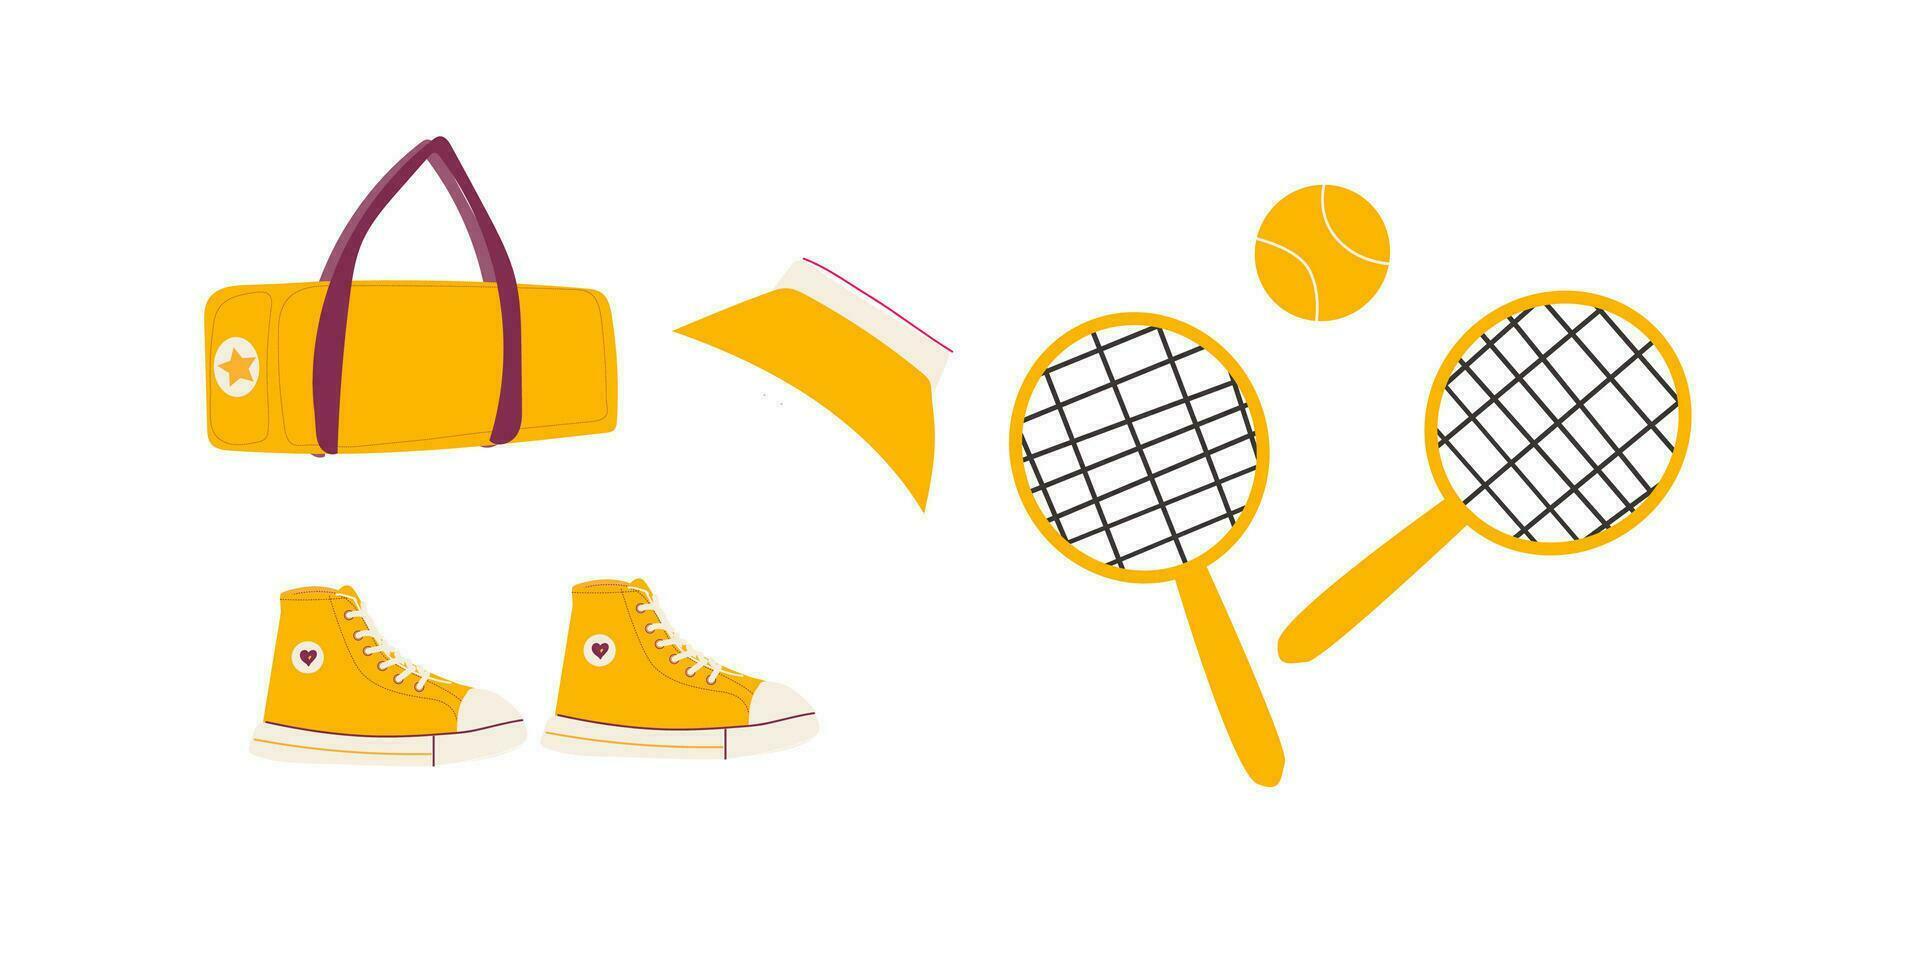 tennis reeks sporting uitrusting met zak en kap. vector illustratie geïsoleerd. tennis racket, bal, sport schoenen, zak en meisjes kap. geel uitrusting en weer voor tennis.